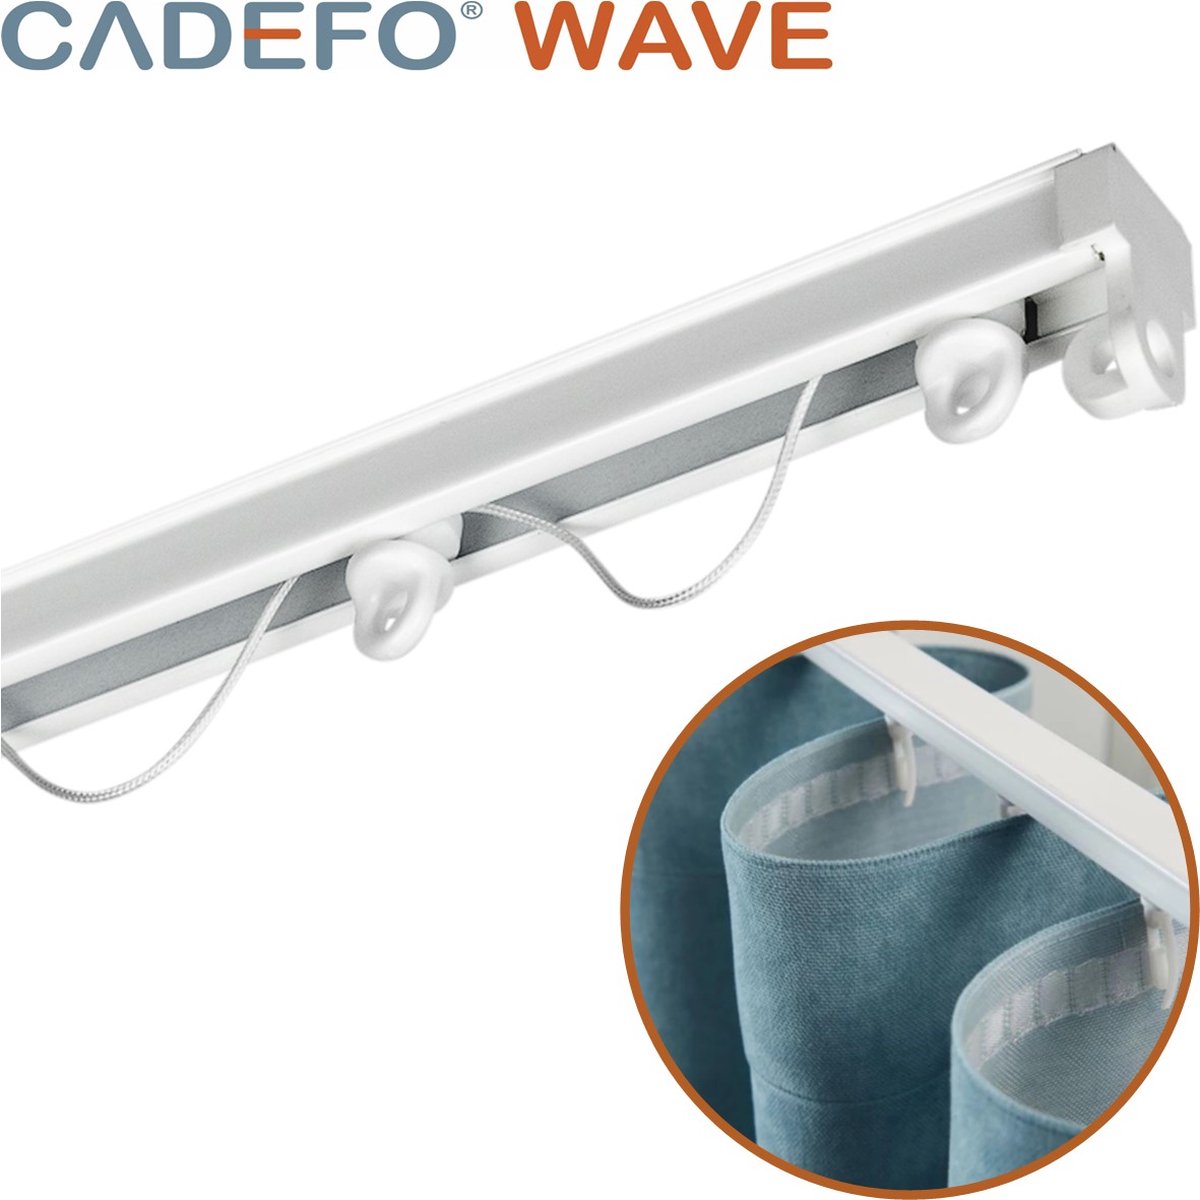 CADEFO WAVE (151 - 200 cm) Gordijnrails - Compleet op maat! - UIT 1 STUK - Leverbaar tot 6 meter - Plafondbevestiging - Lengte 165 cm